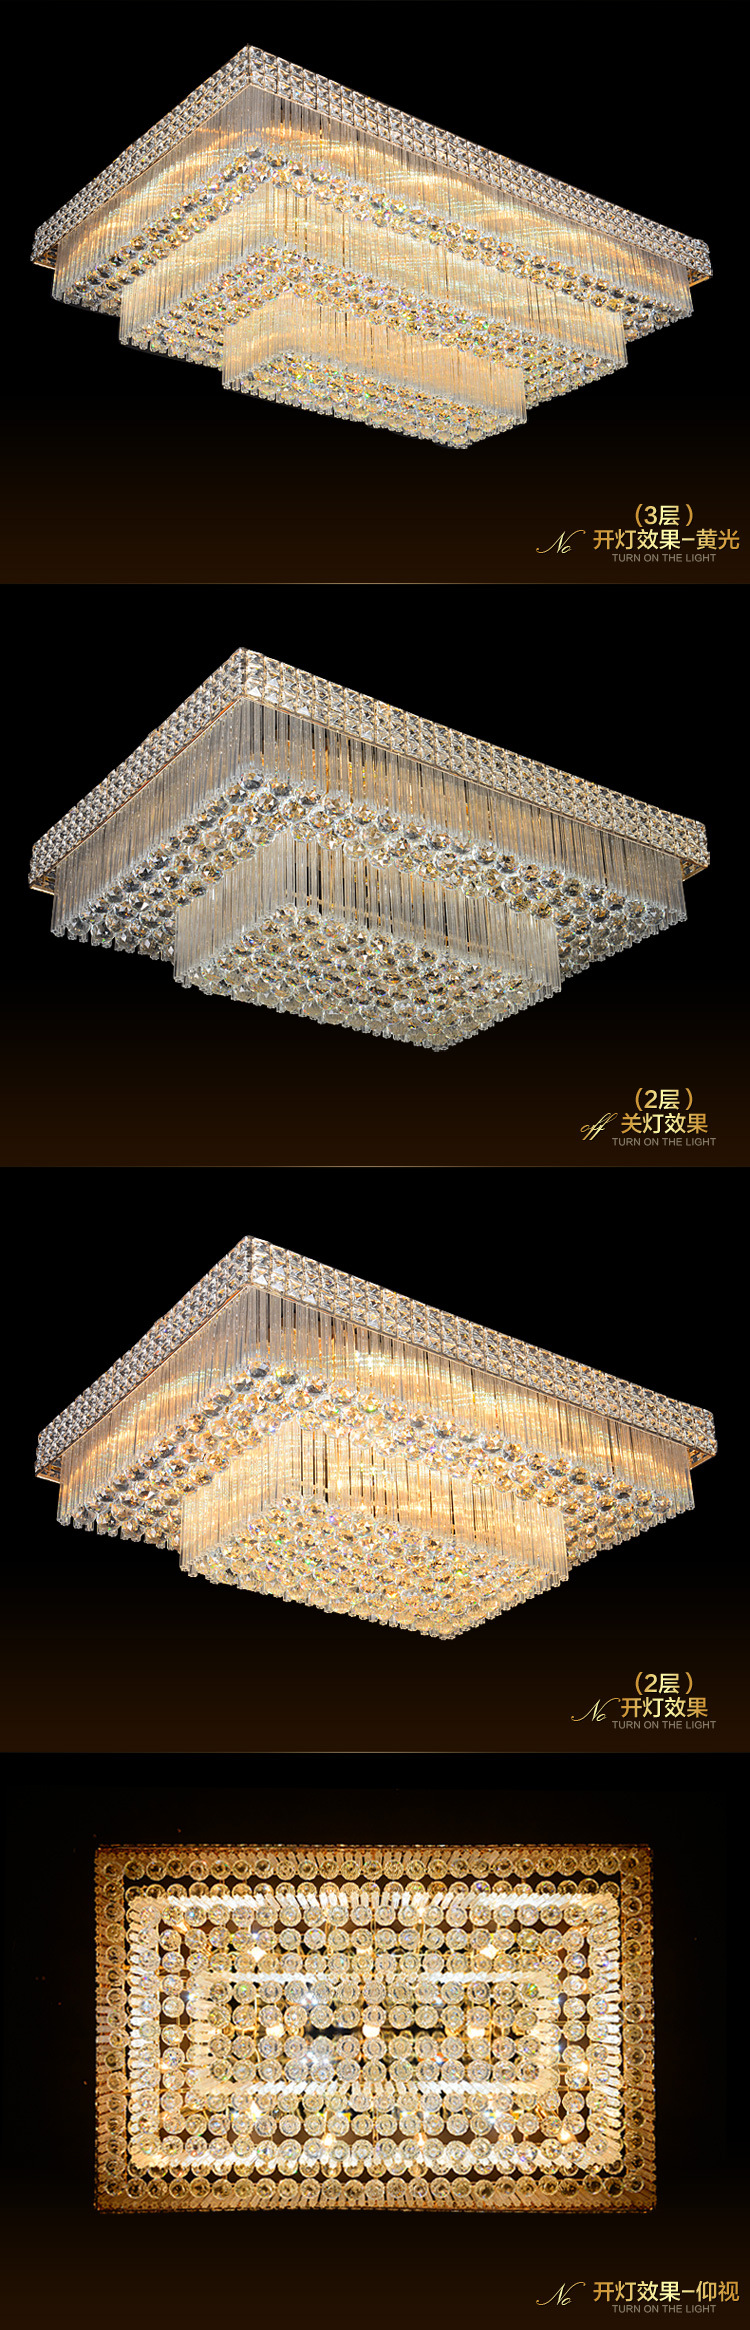 品牌厂家直销LED卧室吸顶灯餐厅家居金色长方形水晶客厅吸顶灯具示例图6